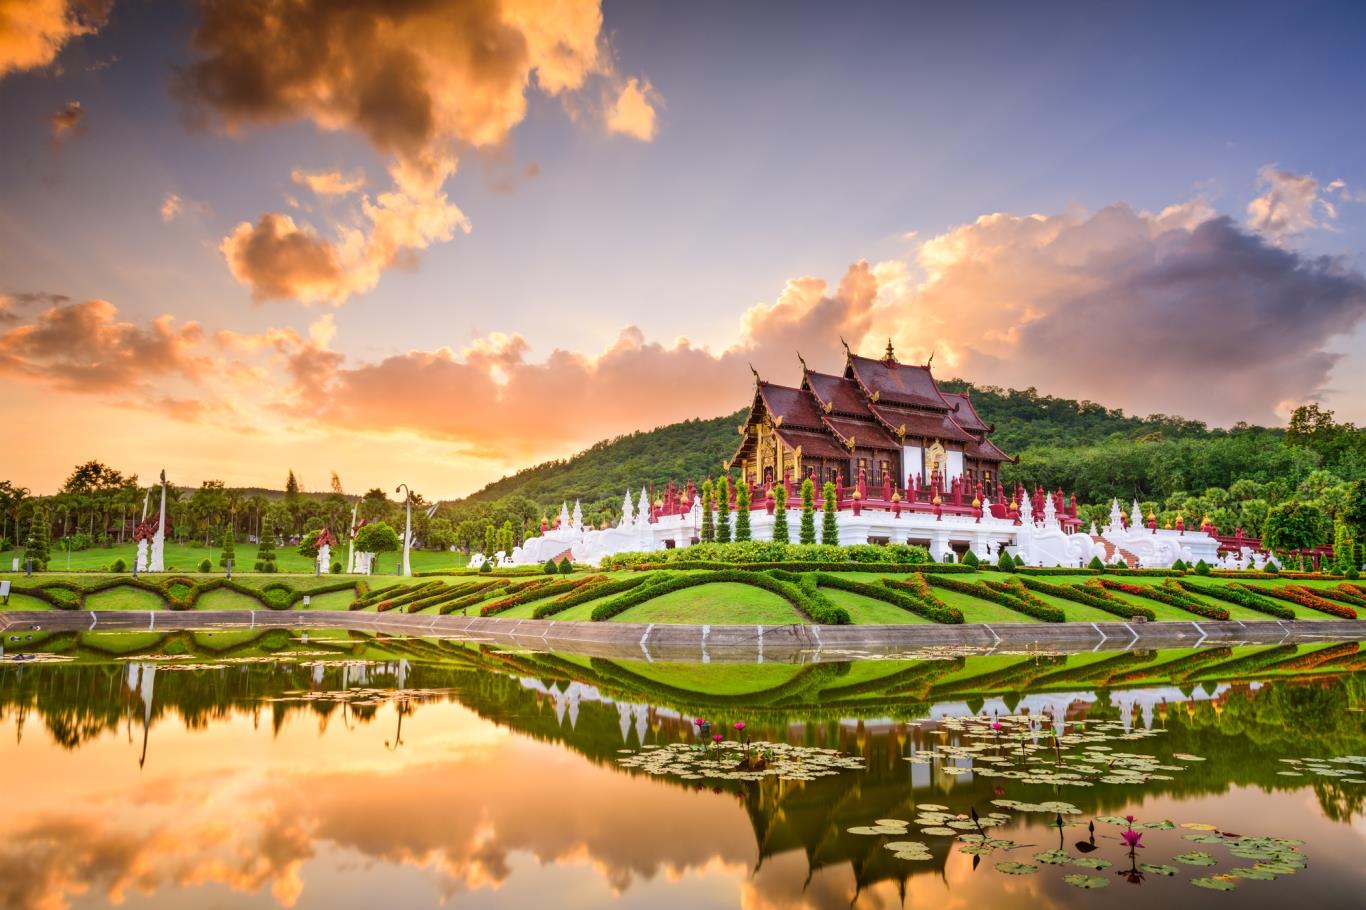 10. Cung điện mùa hè – Phu Ping Palace